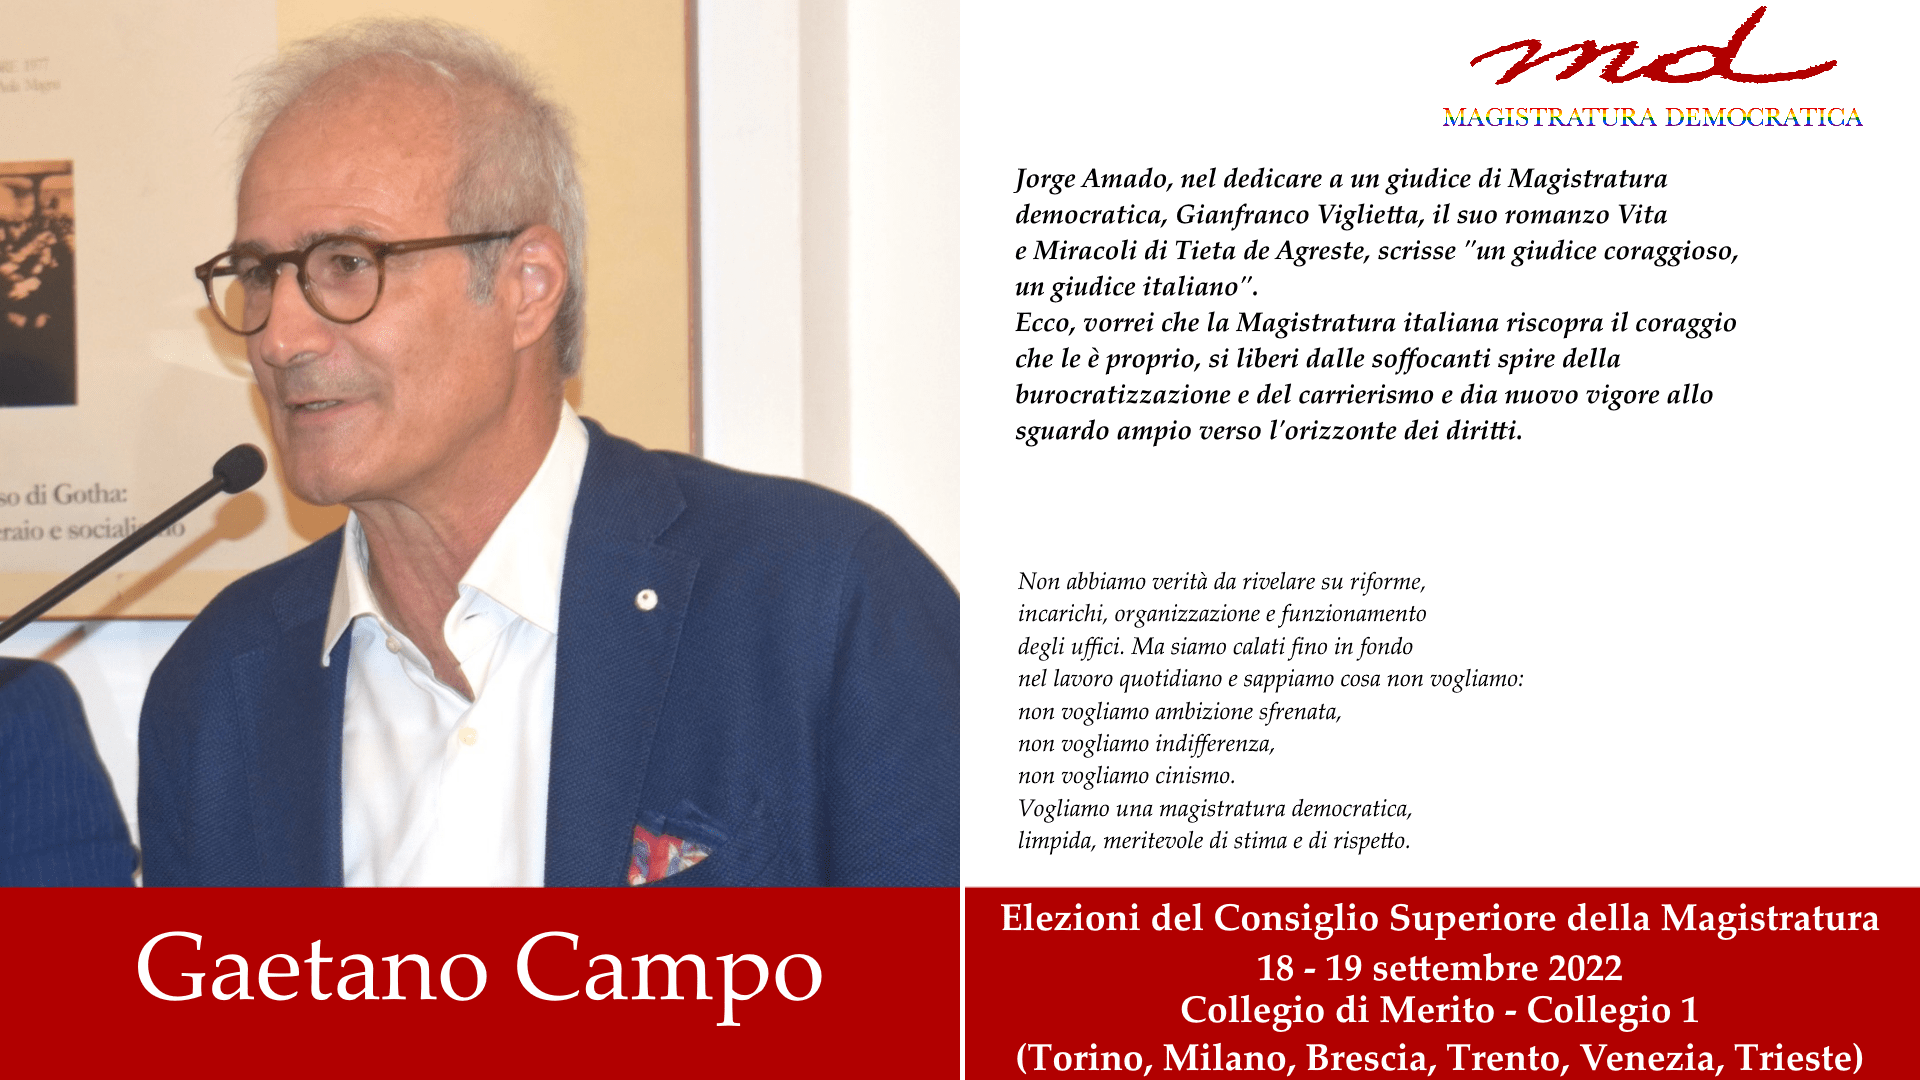 Gaetano Campo